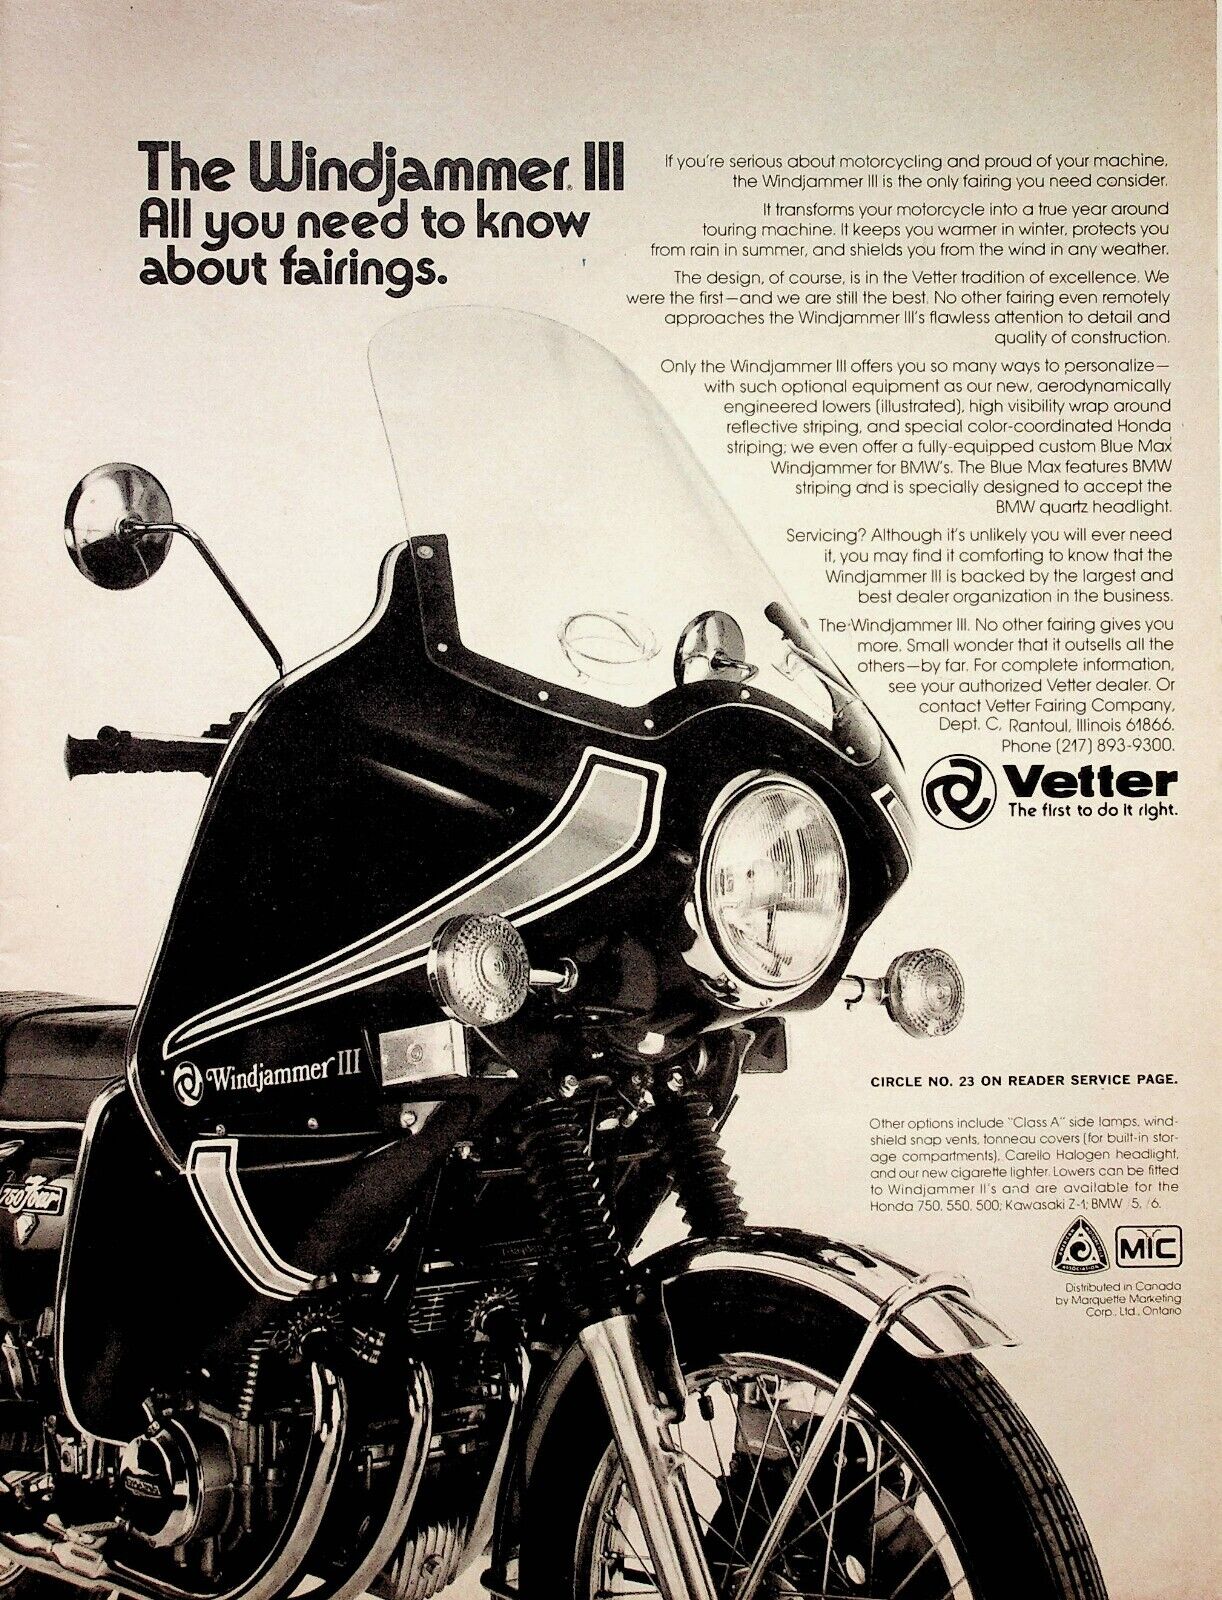 1975 Windjammer Vetter Motorcycle Fairings - Vintage Advertisement